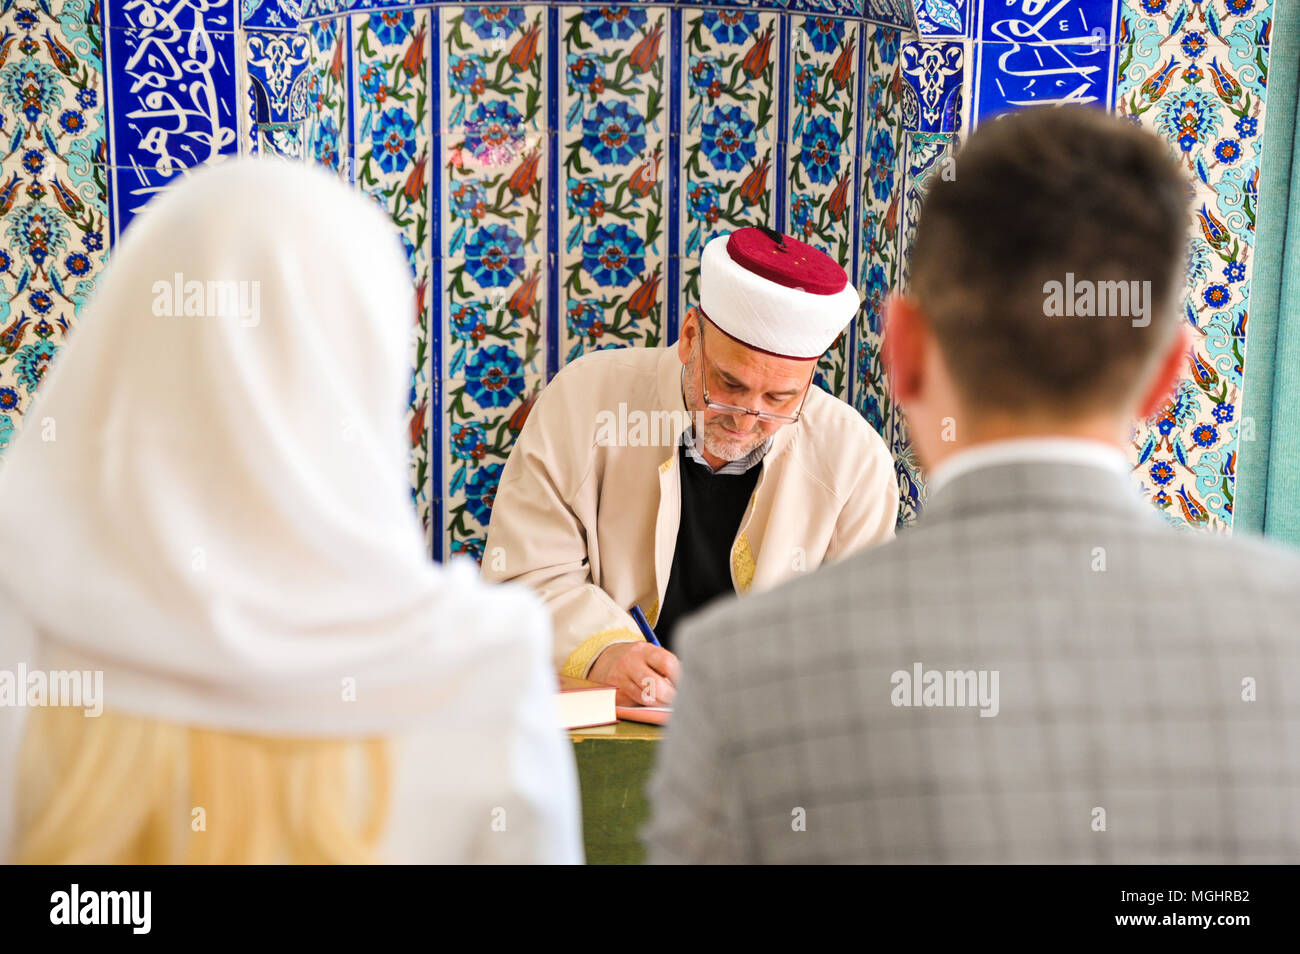 Boda en la mezquita. Compromiso islámico tradicional. Foto de stock